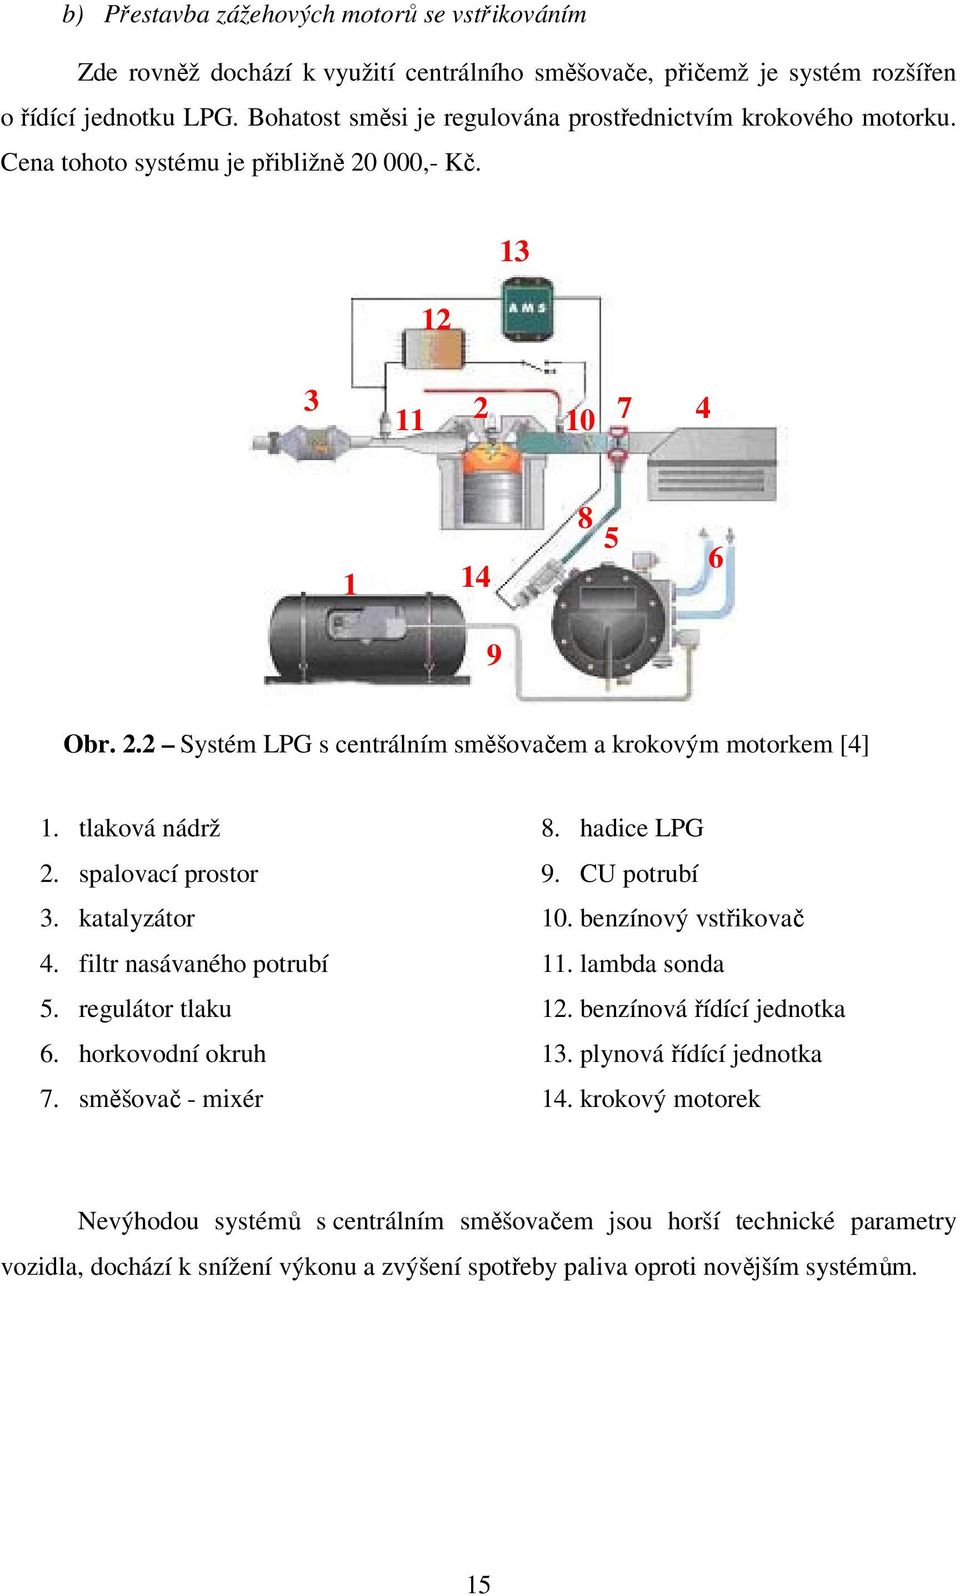 tlaková nádrž 2. spalovací prostor 3. katalyzátor 4. filtr nasávaného potrubí 5. regulátor tlaku 6. horkovodní okruh 7. směšovač - mixér 8. hadice LPG 9. CU potrubí 10. benzínový vstřikovač 11.